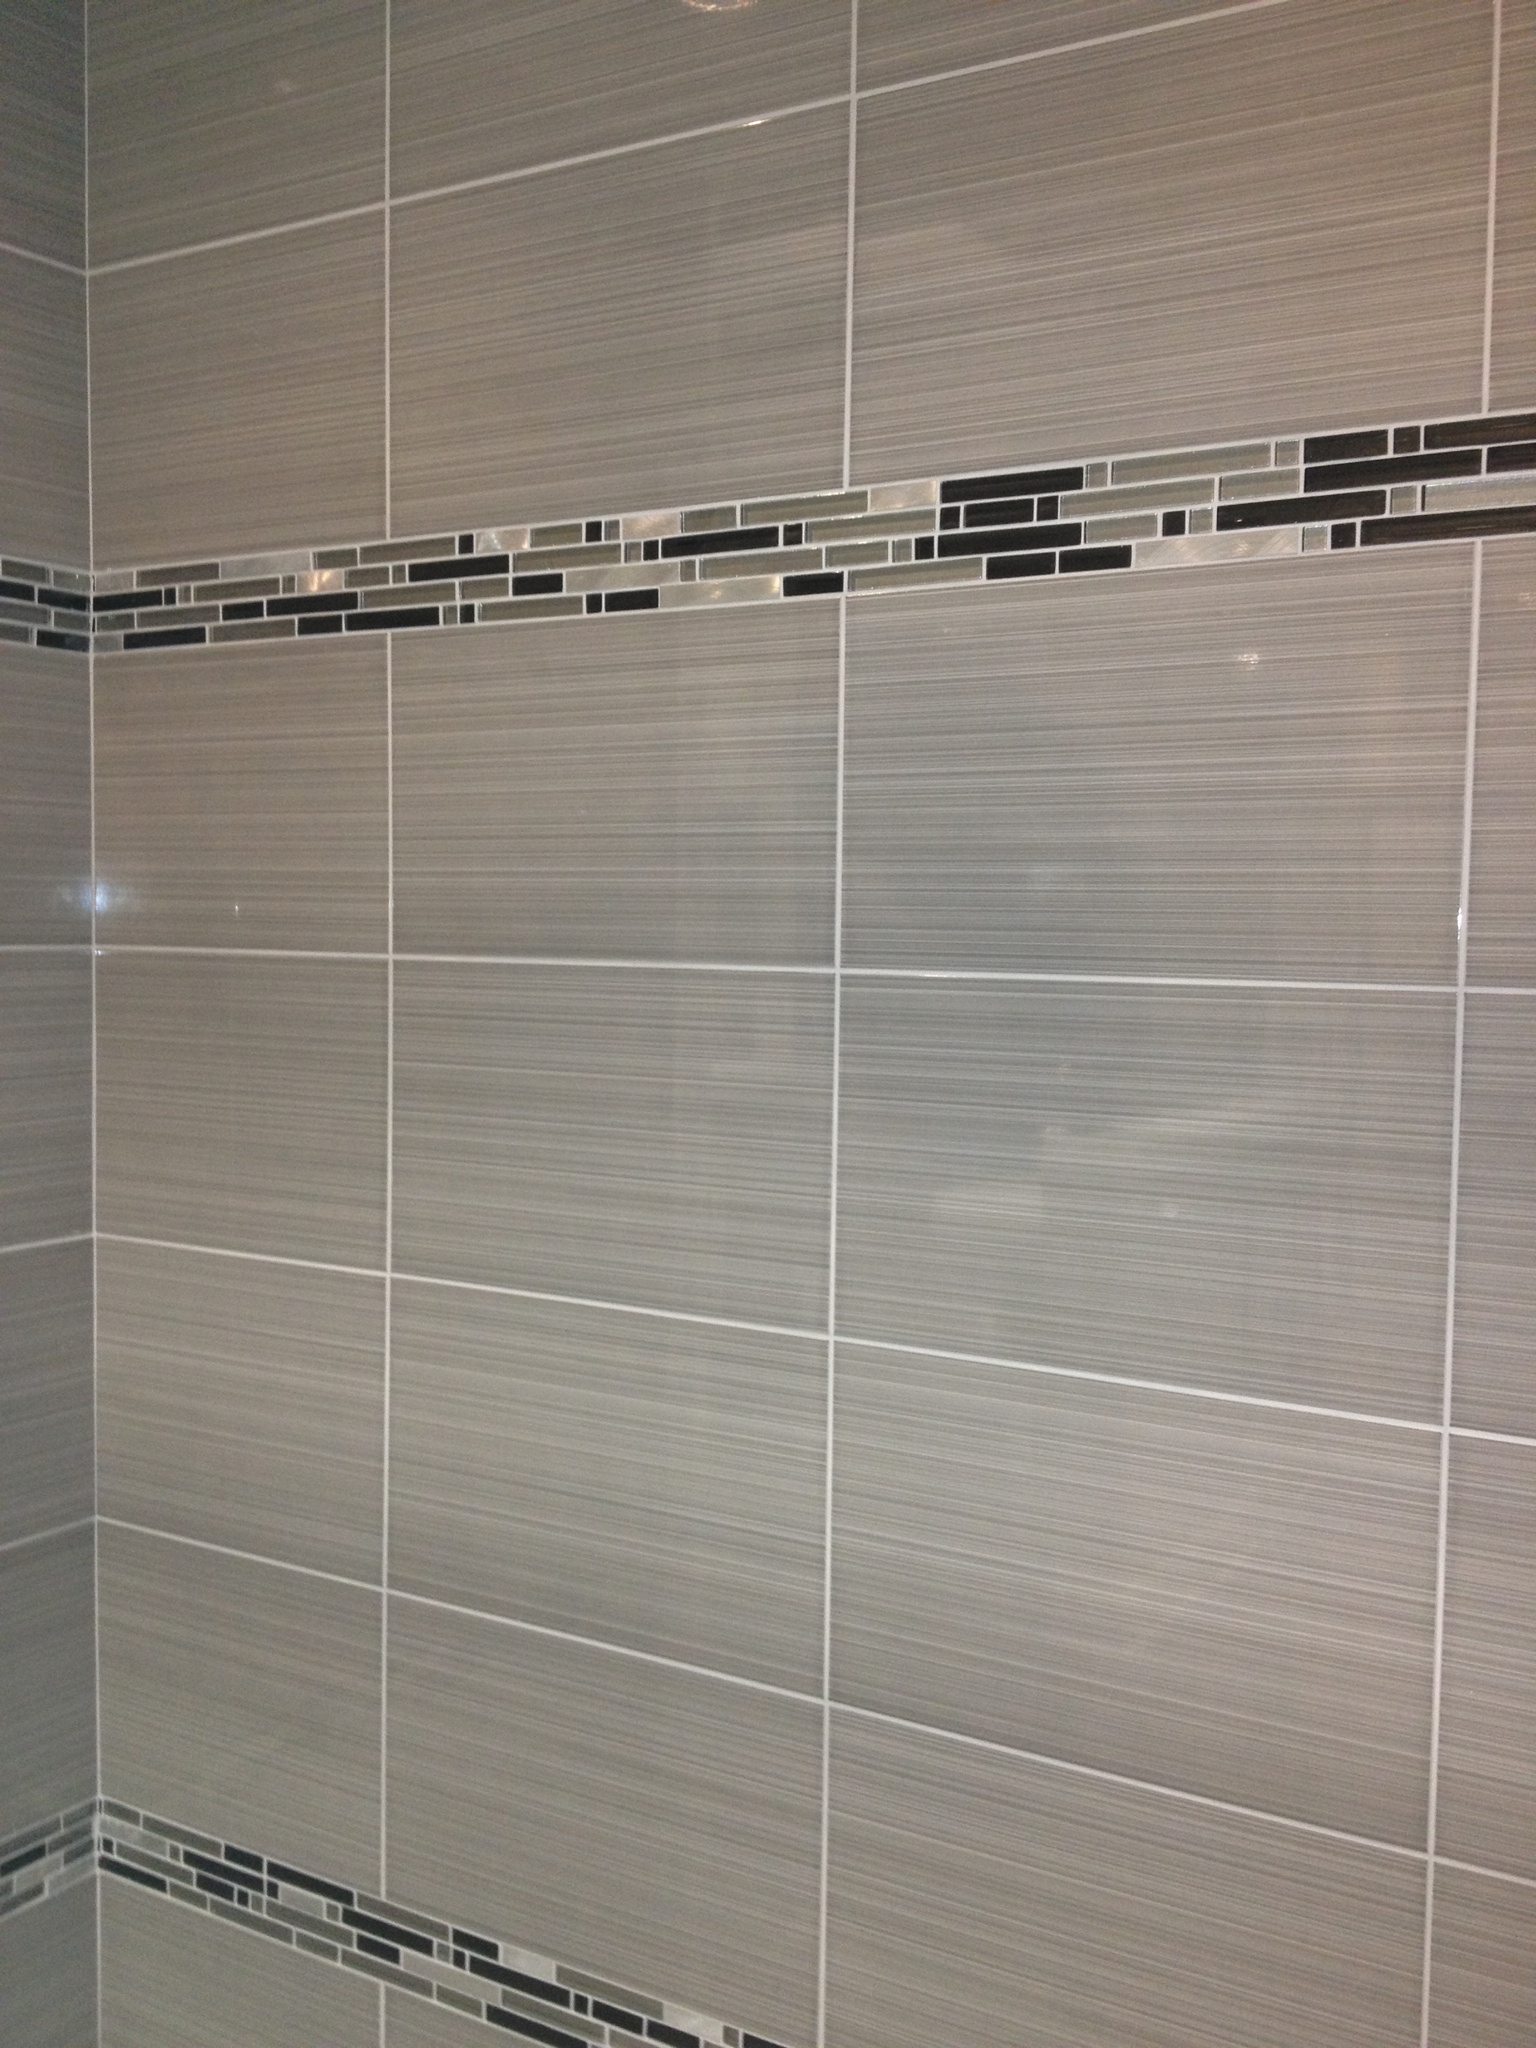 30 great ideas of glass tiles for bathroom floors